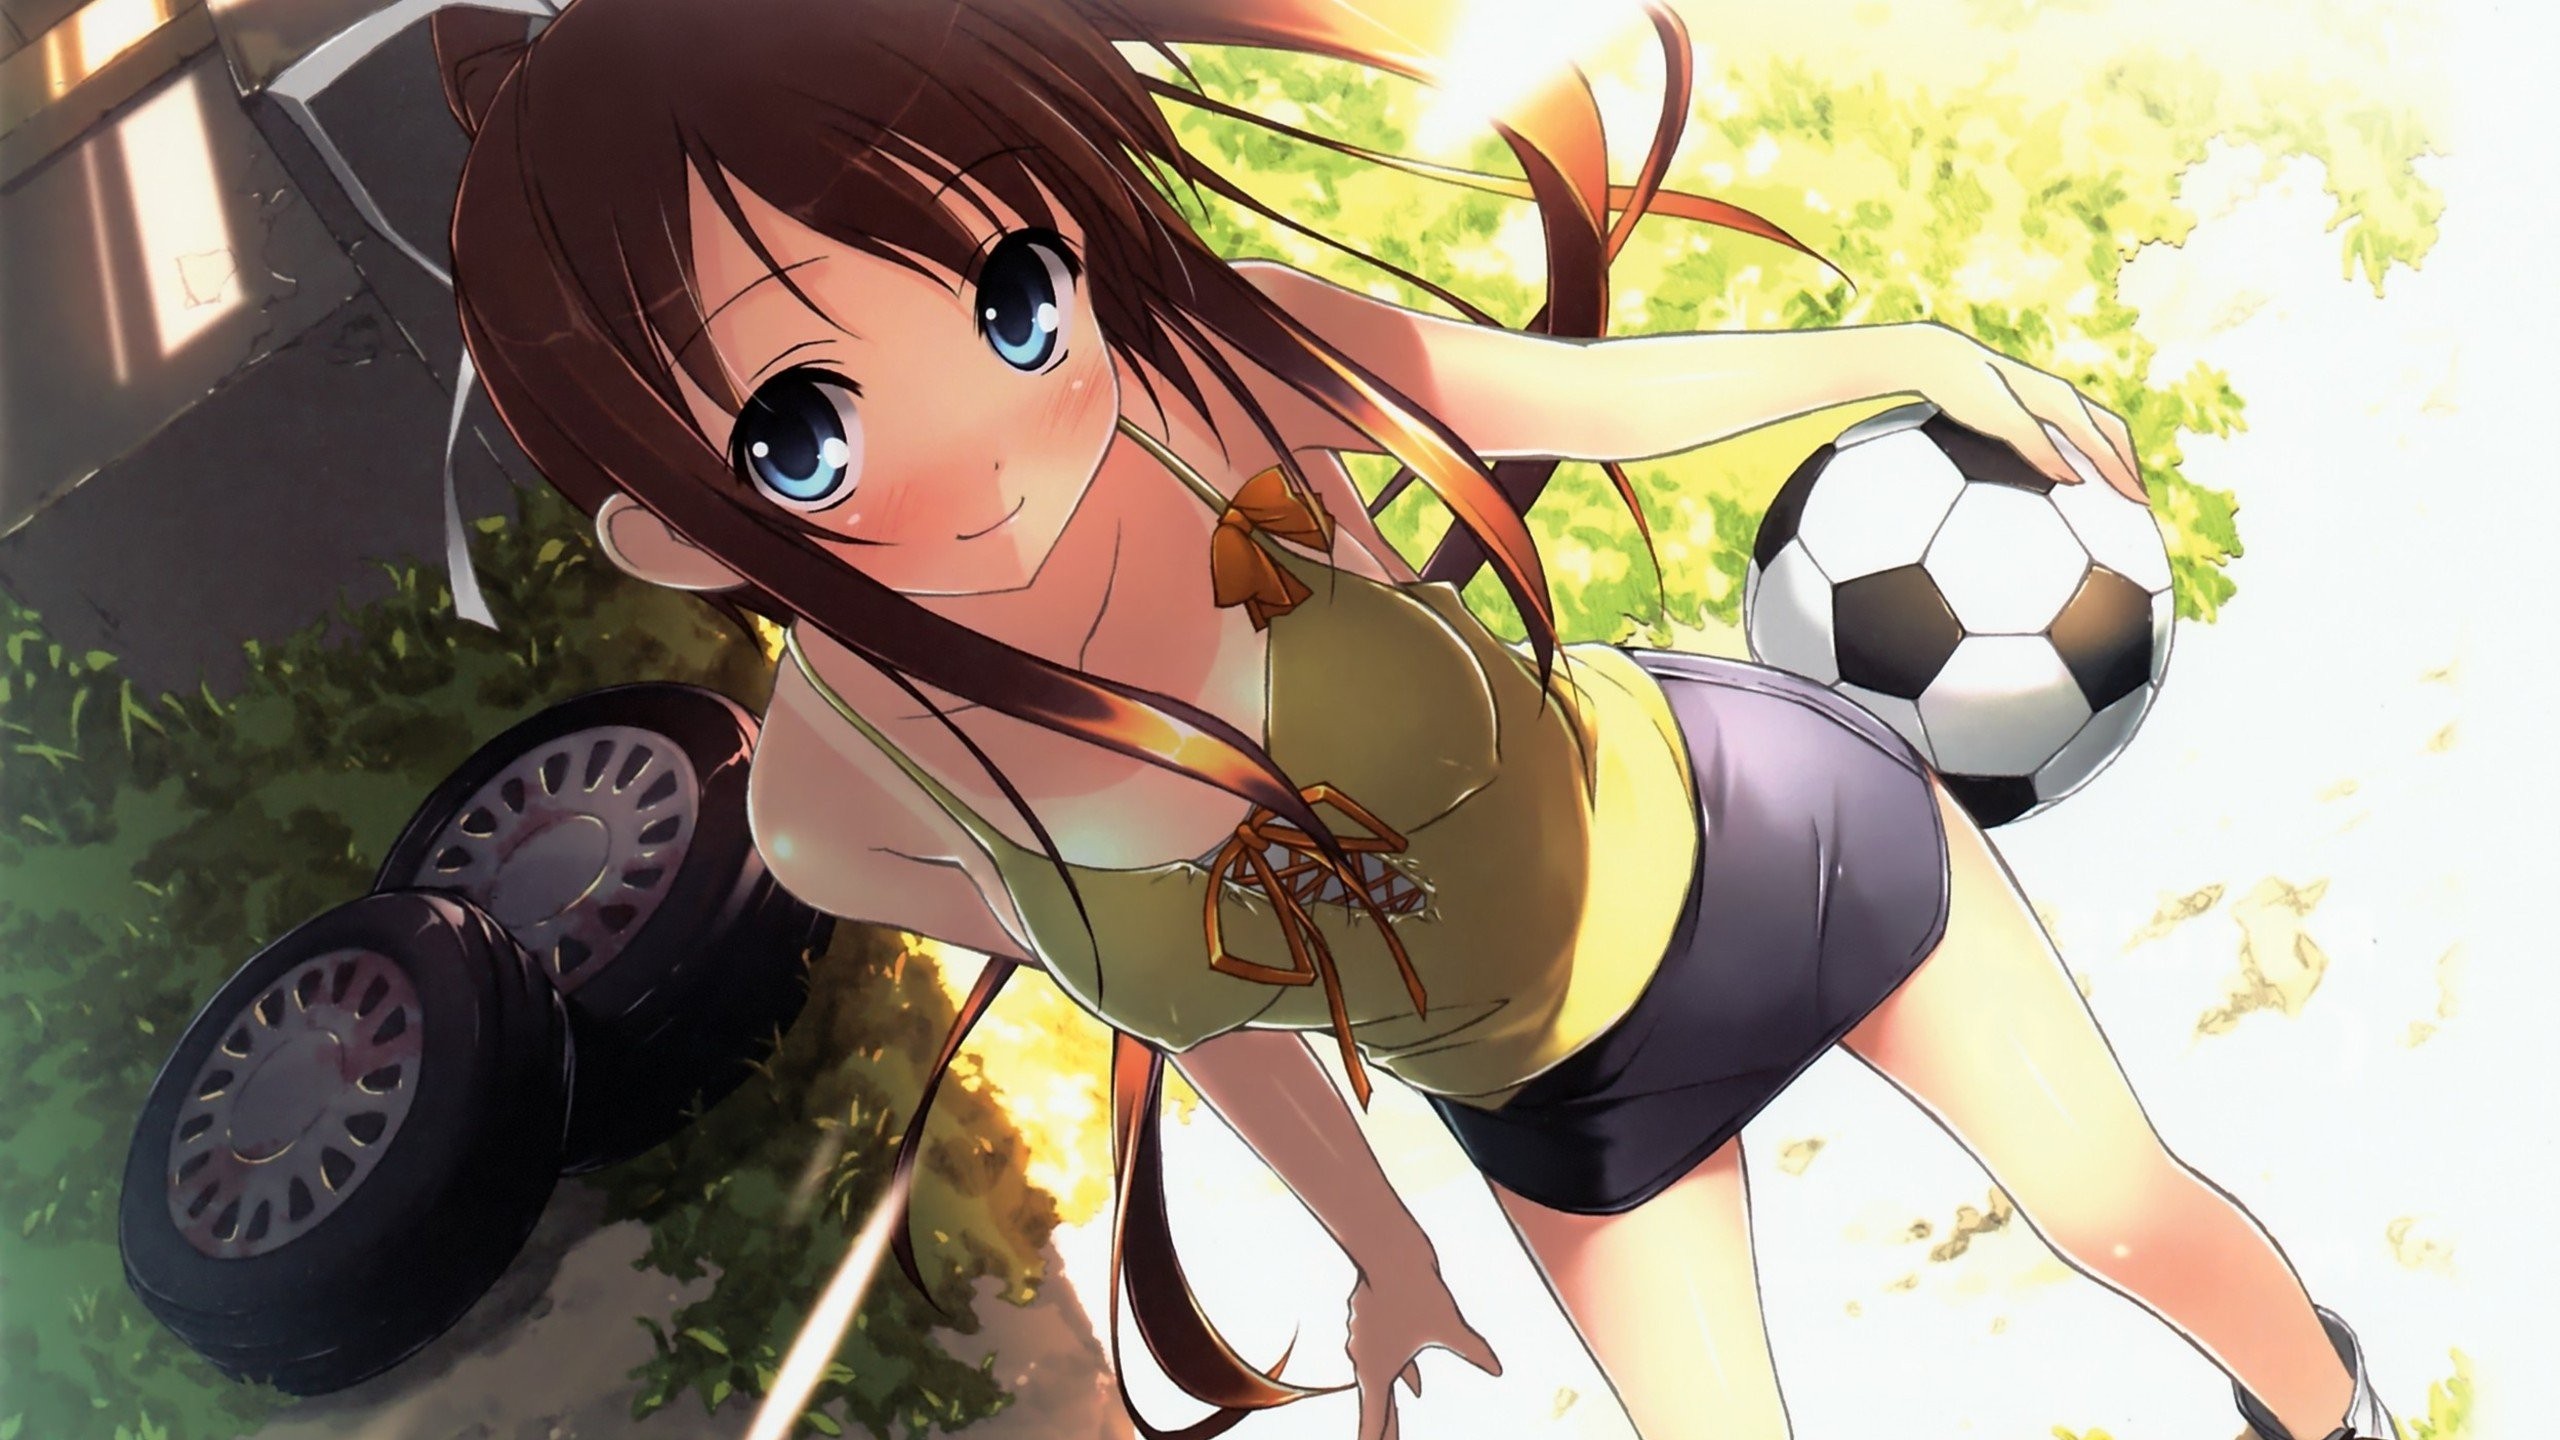 Anime Anime Girls Natsu No Ame Soccer Ball Tanlines Skirt Smiling Blue Eyes Brunette 2560x1440